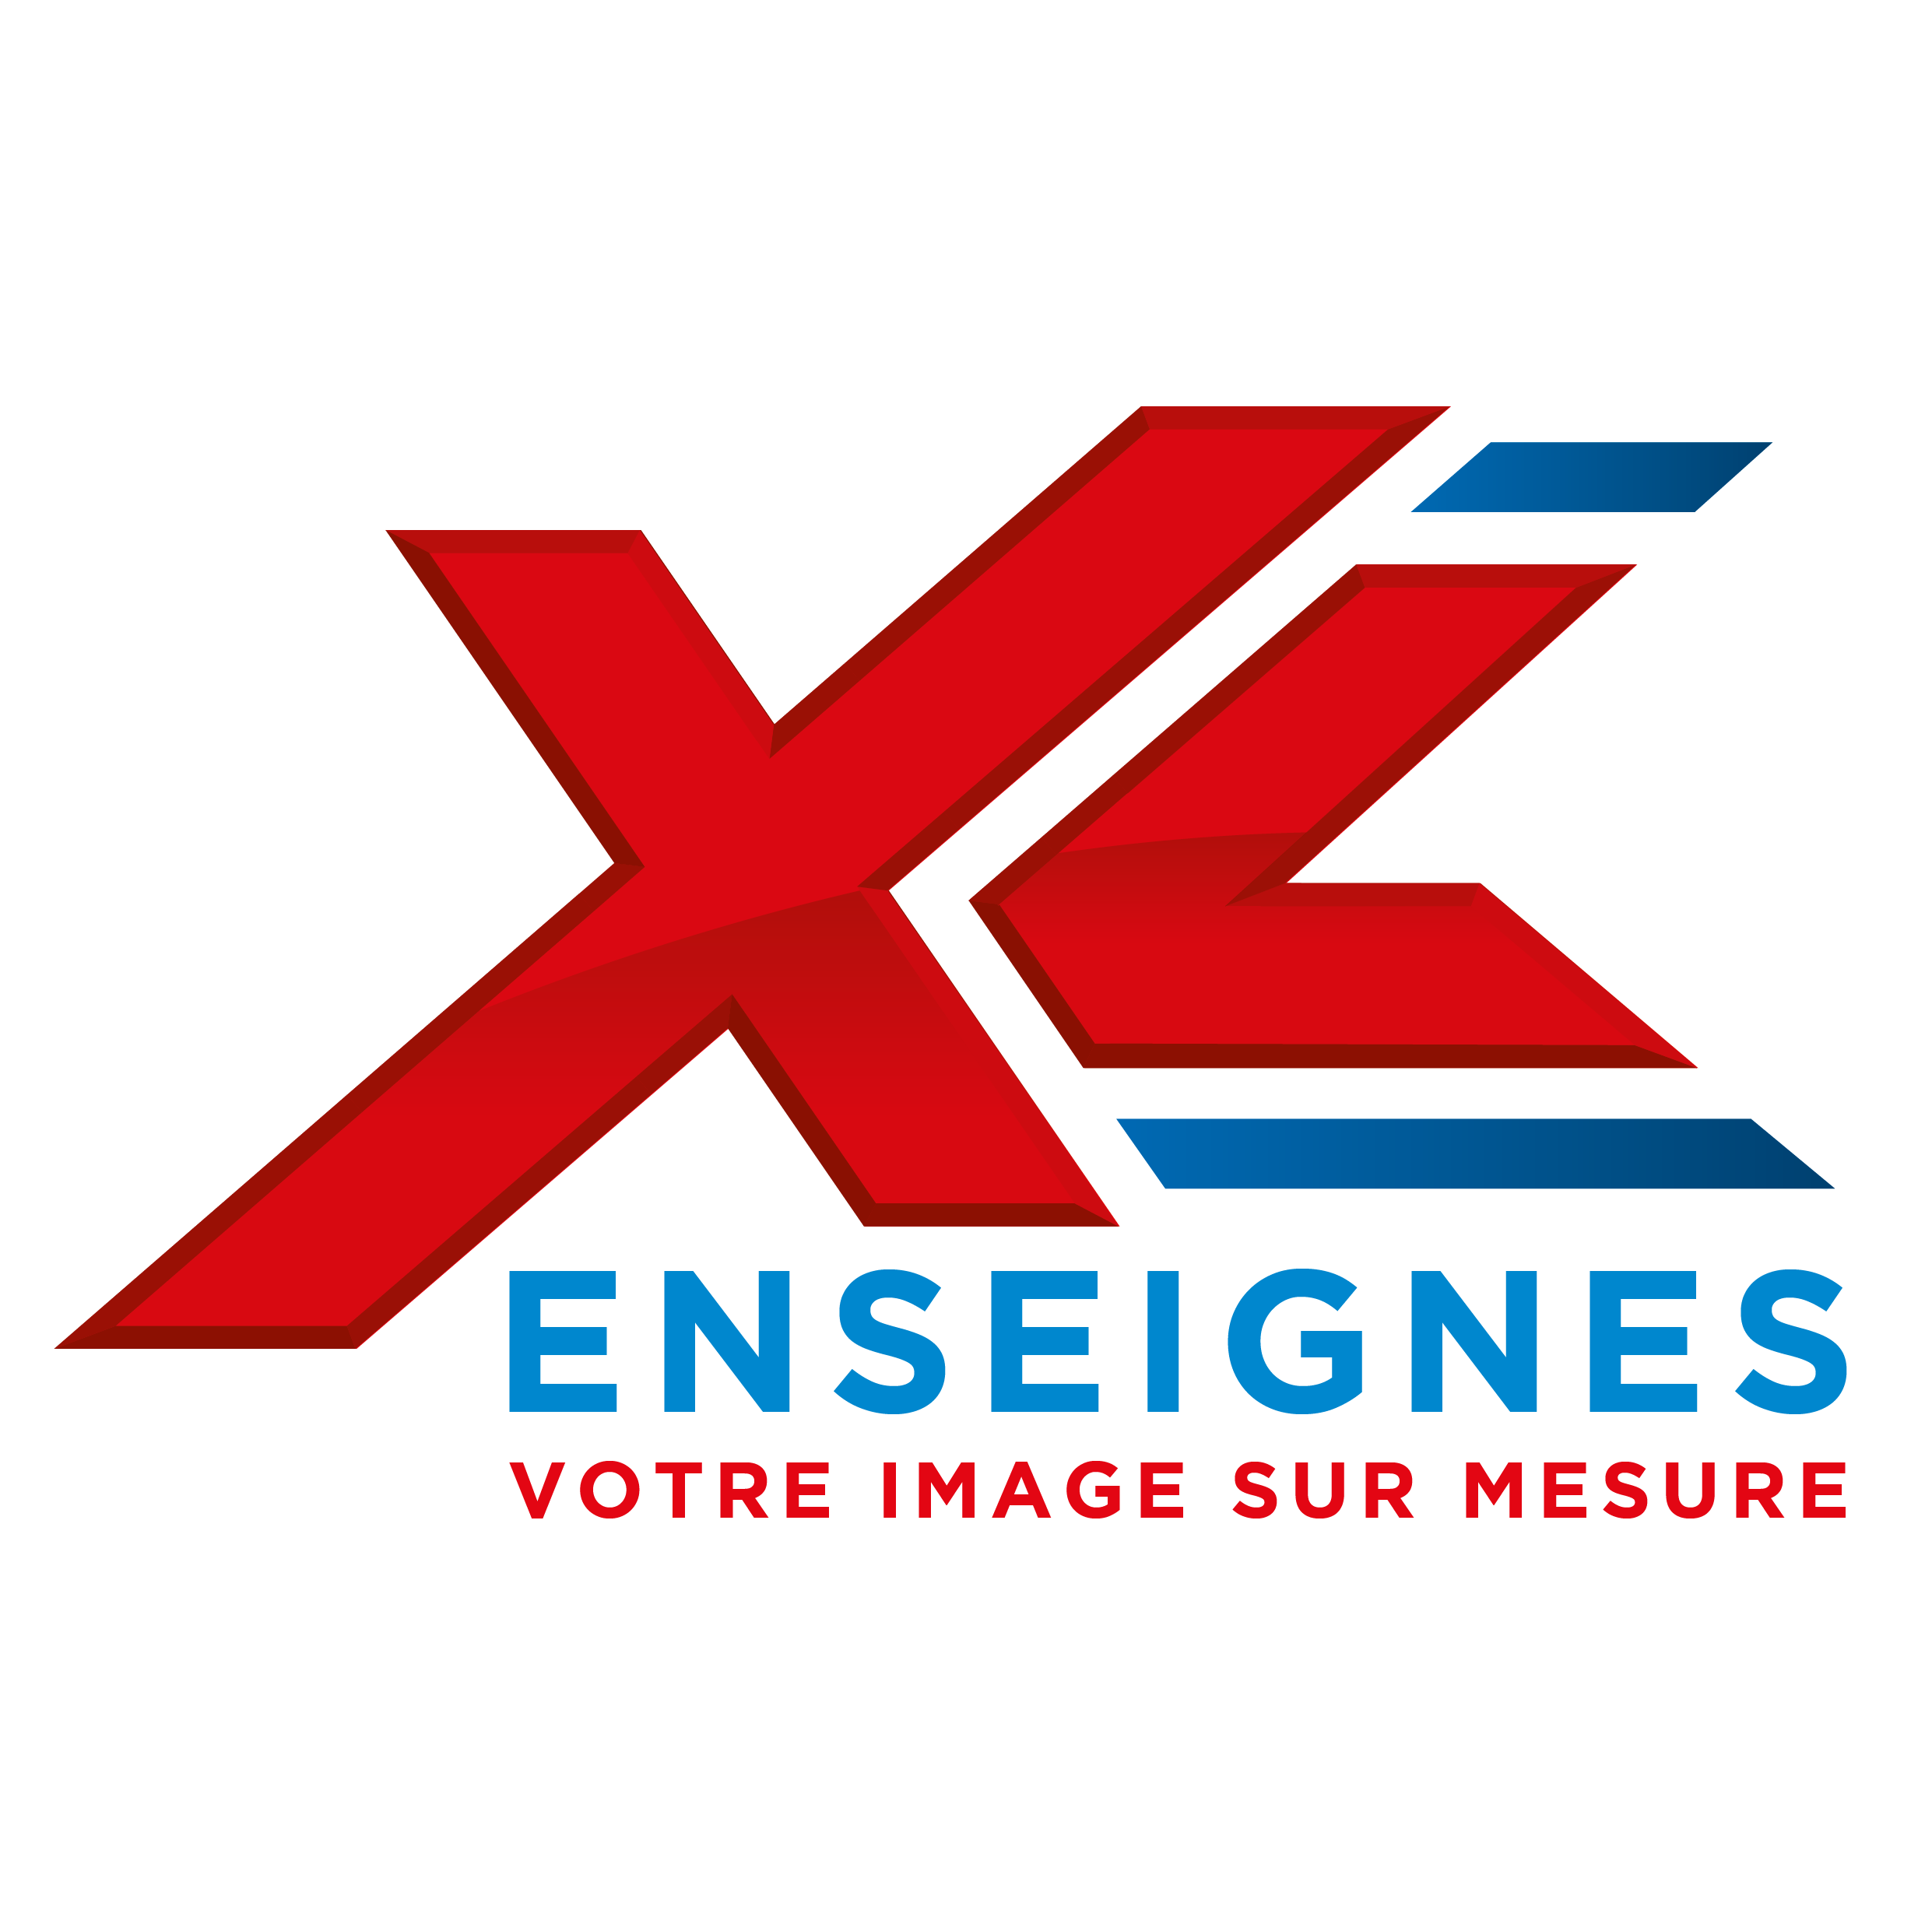 //www.xlenseignes.com/wp-content/uploads/2022/04/Logo-XL-2022-Carre_Plan-de-travail-1.png